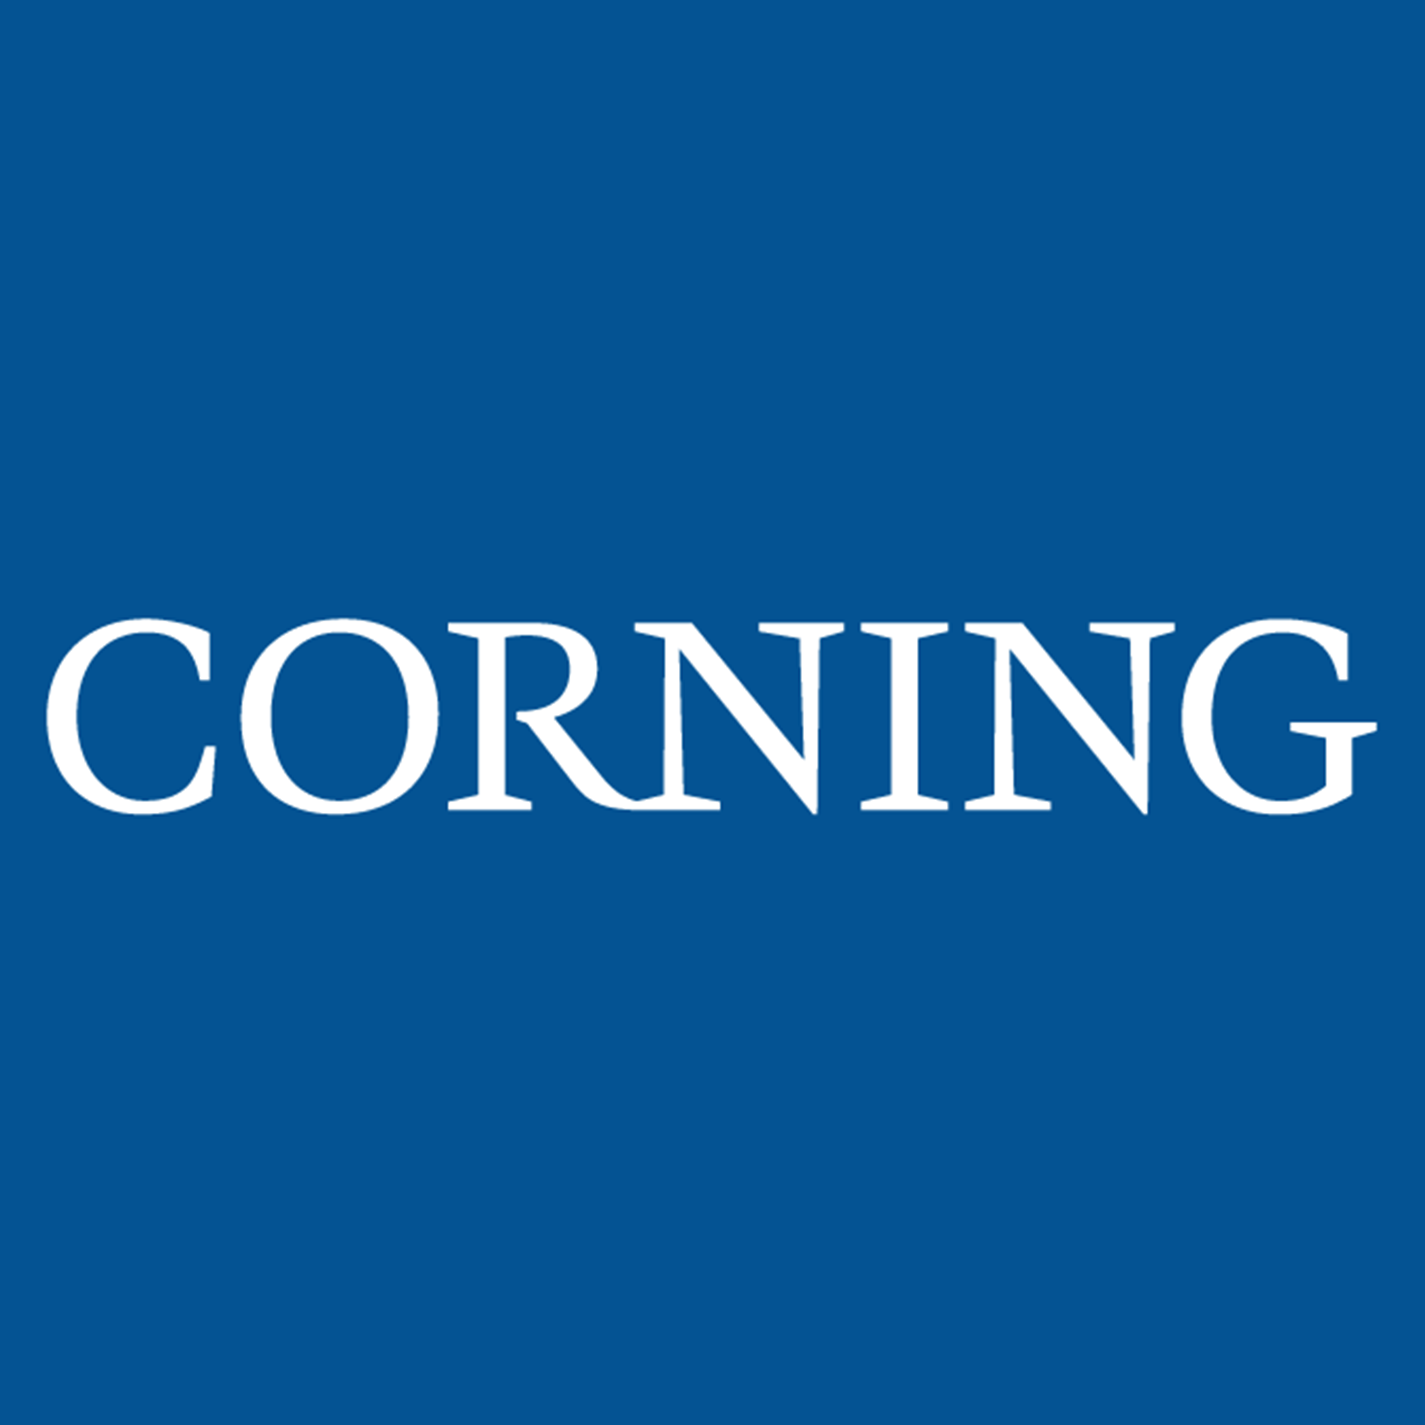 Corning® 500 g Yeast Extract, Powder